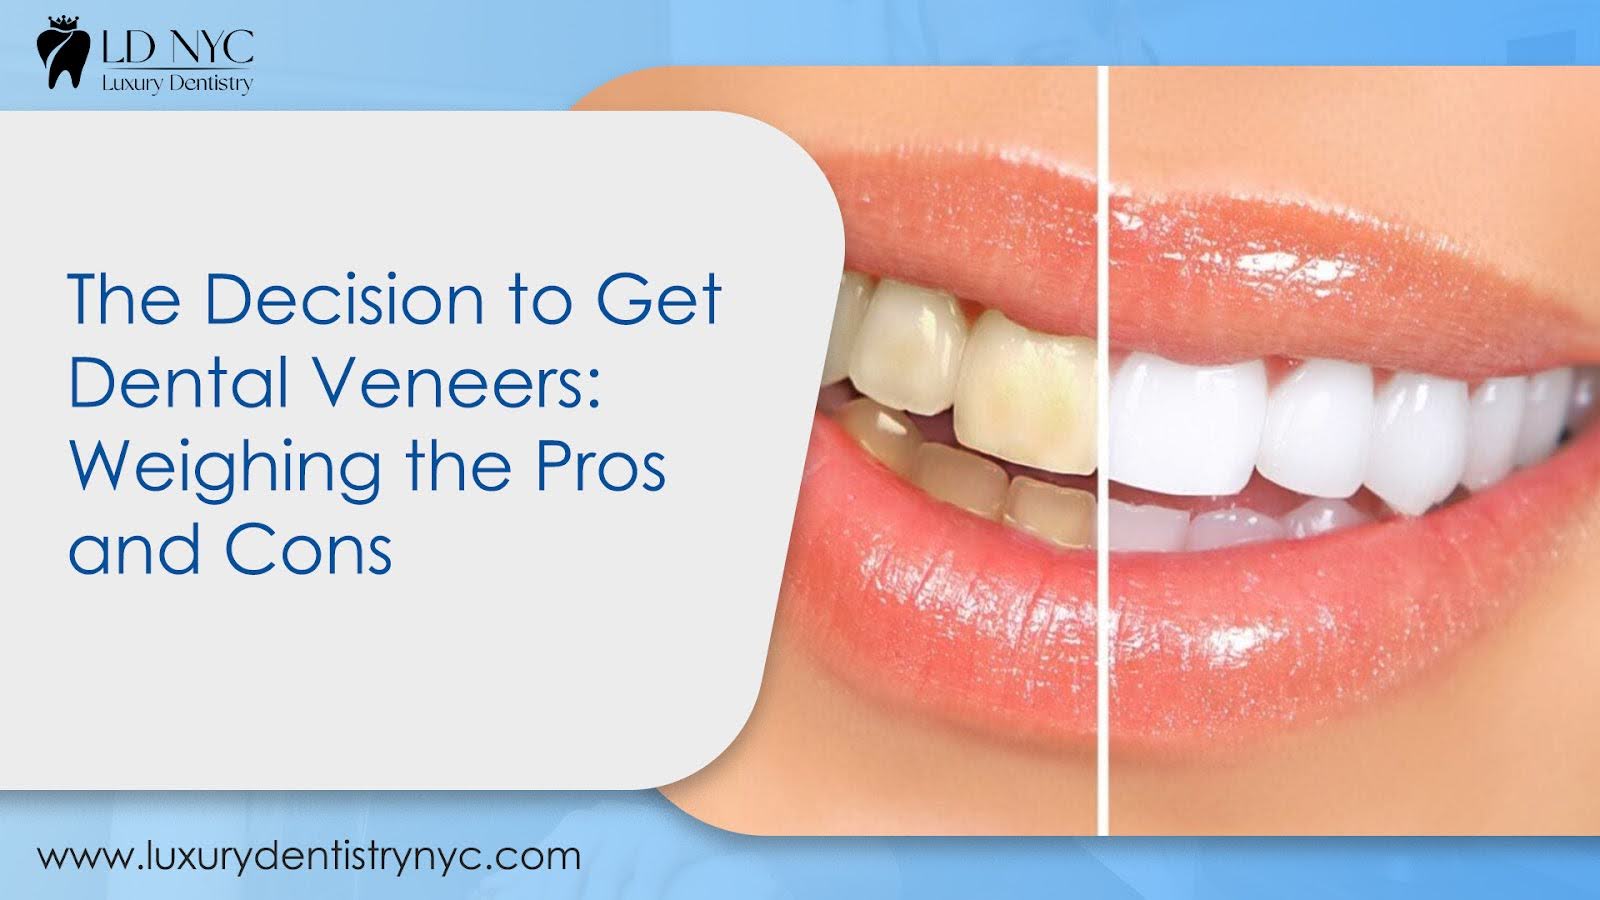 The Decision to Get Dental Veneers